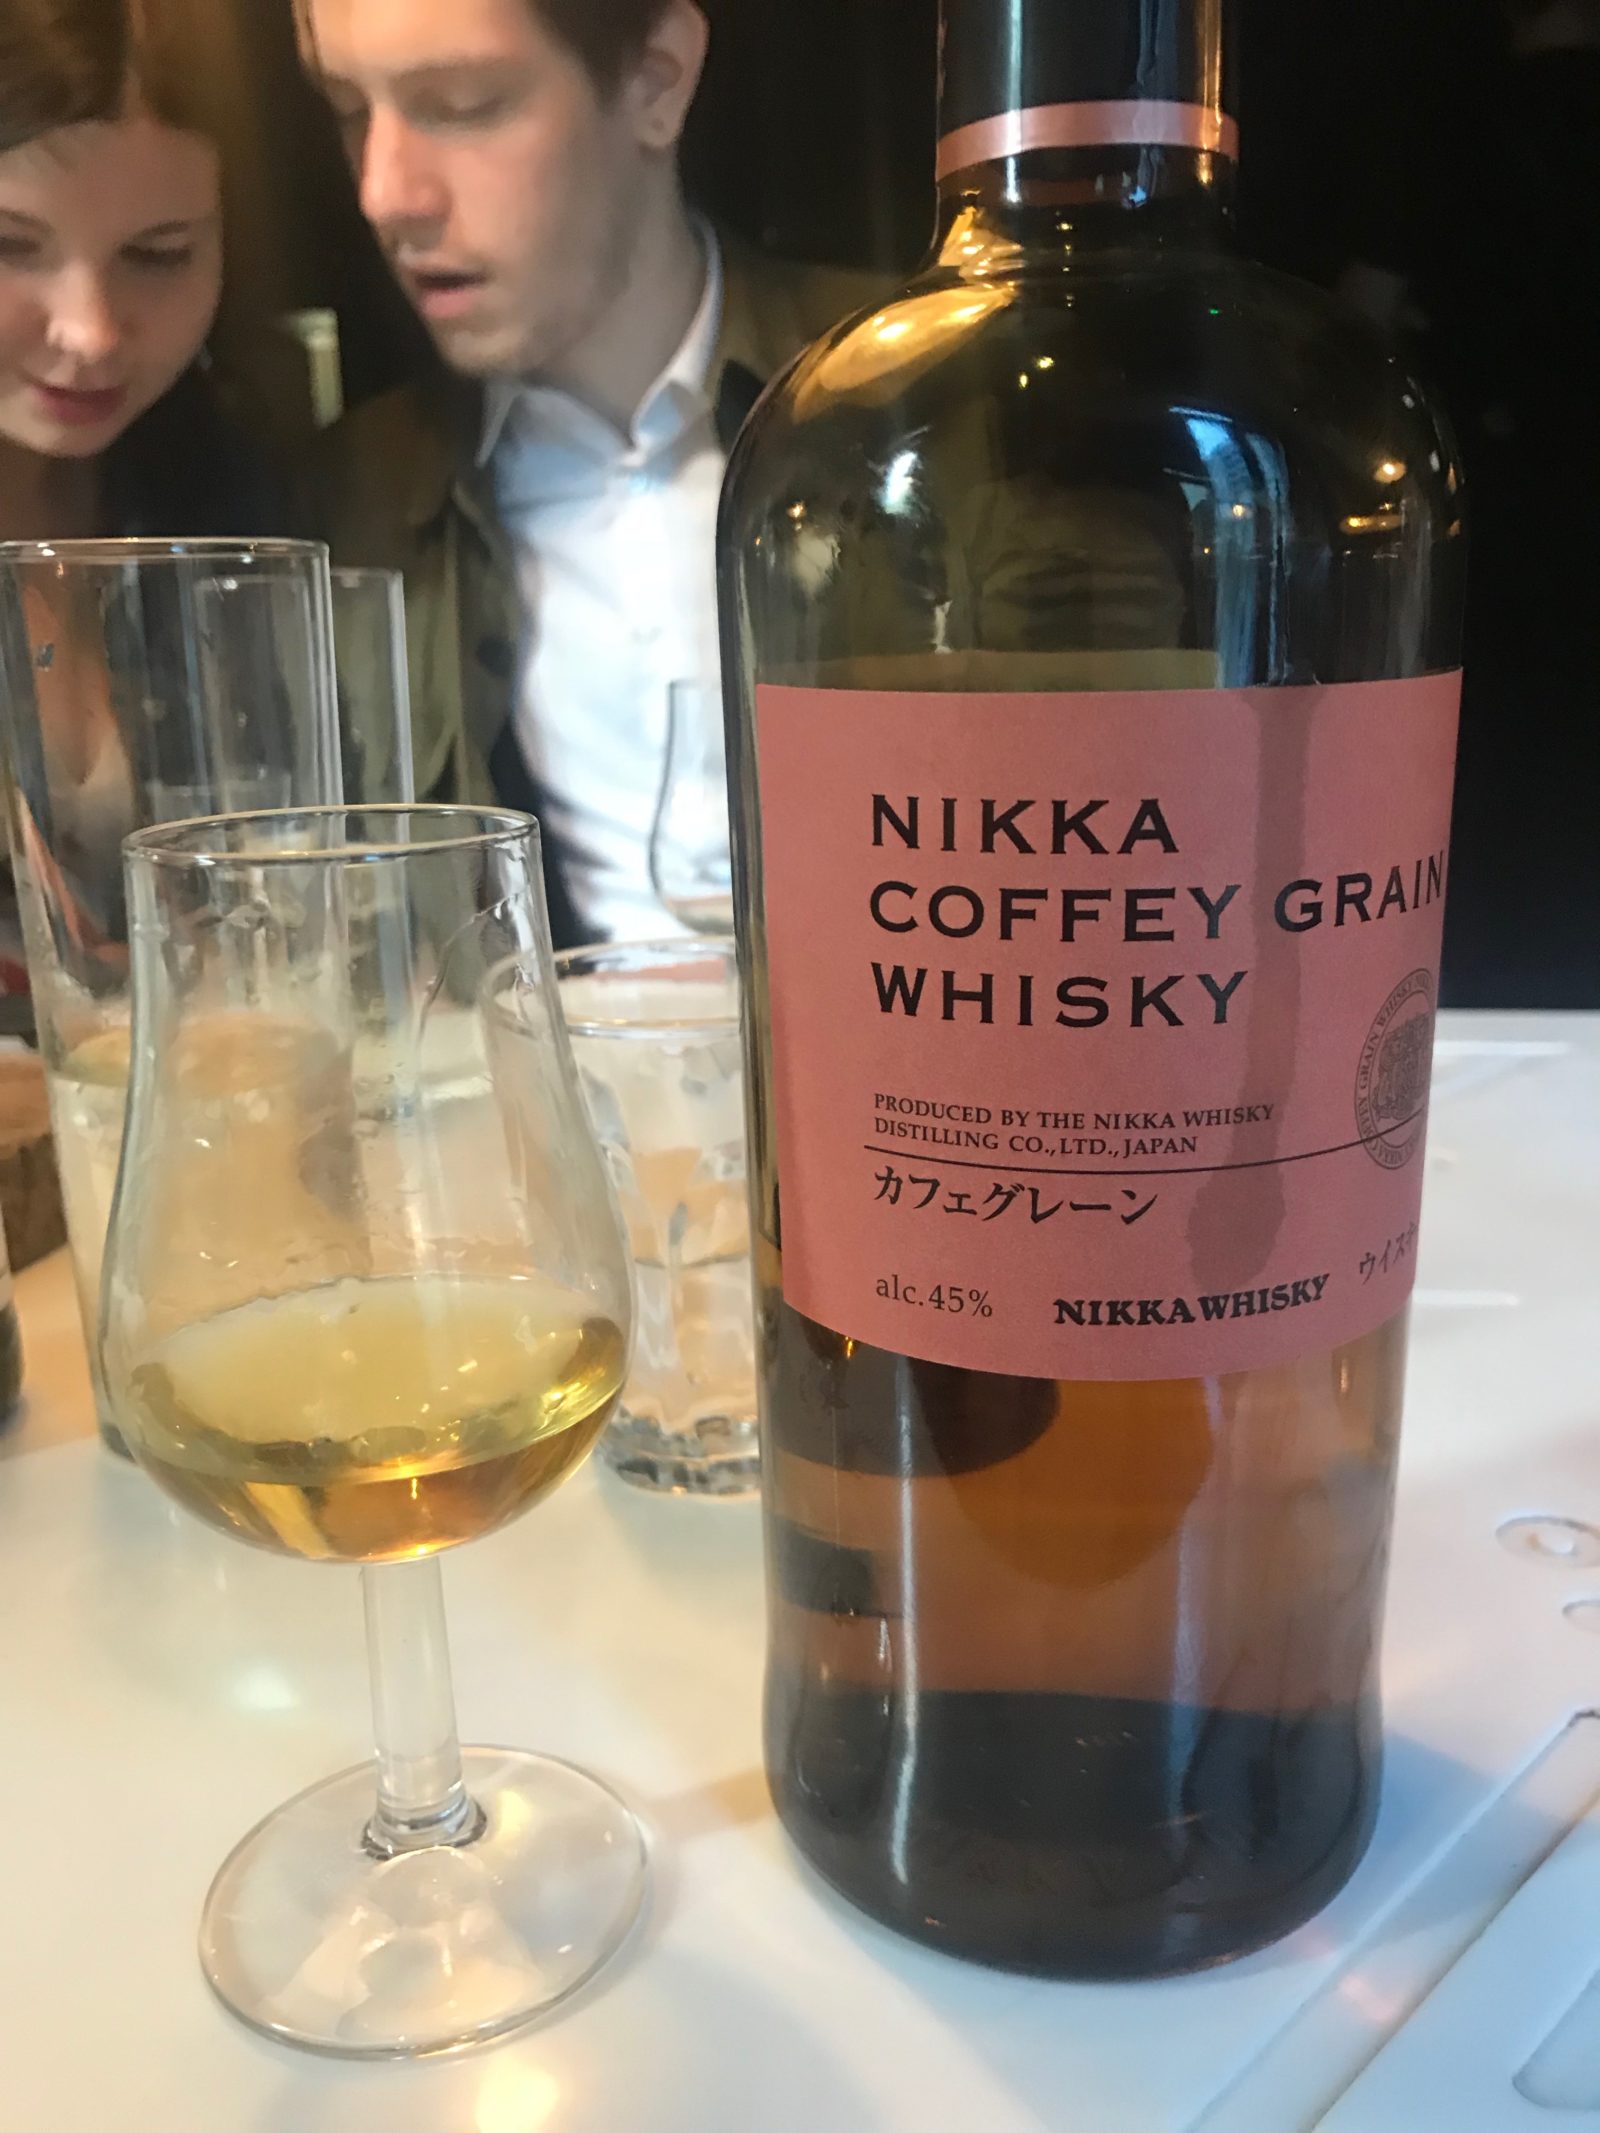 Nikka Japanese whisky tasting in Cardiff